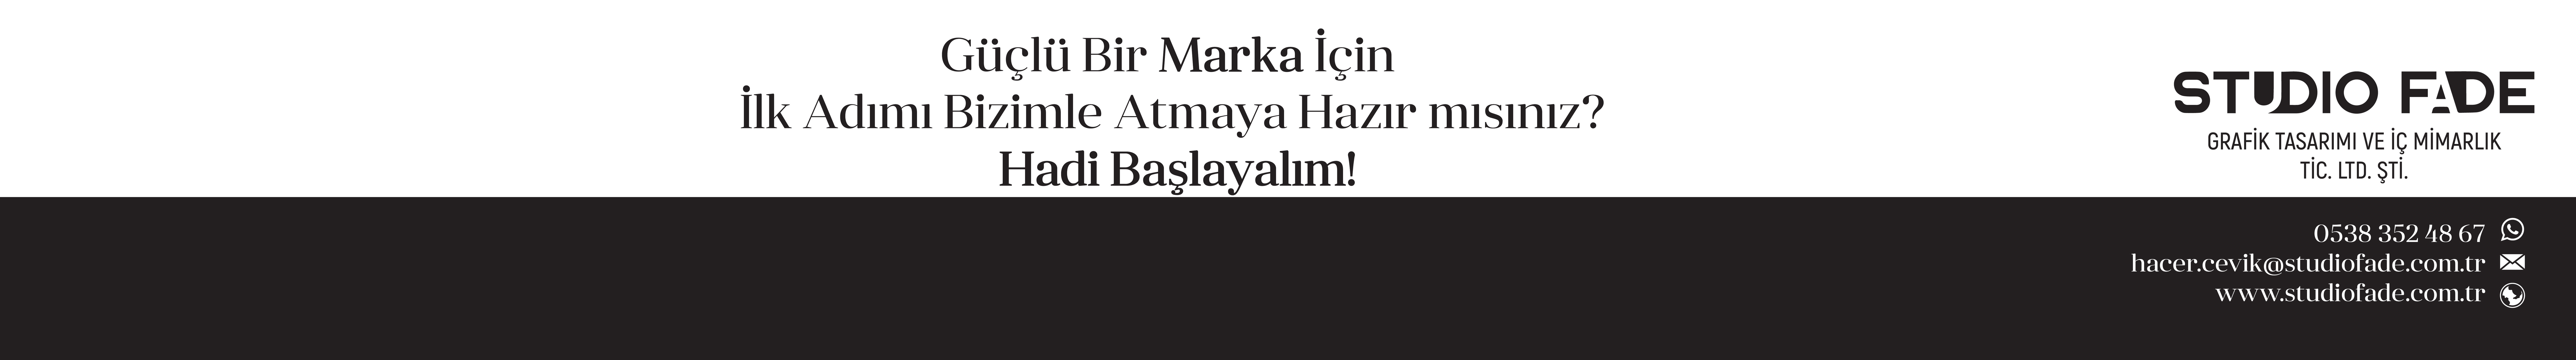 Hacer Çevik's profile banner